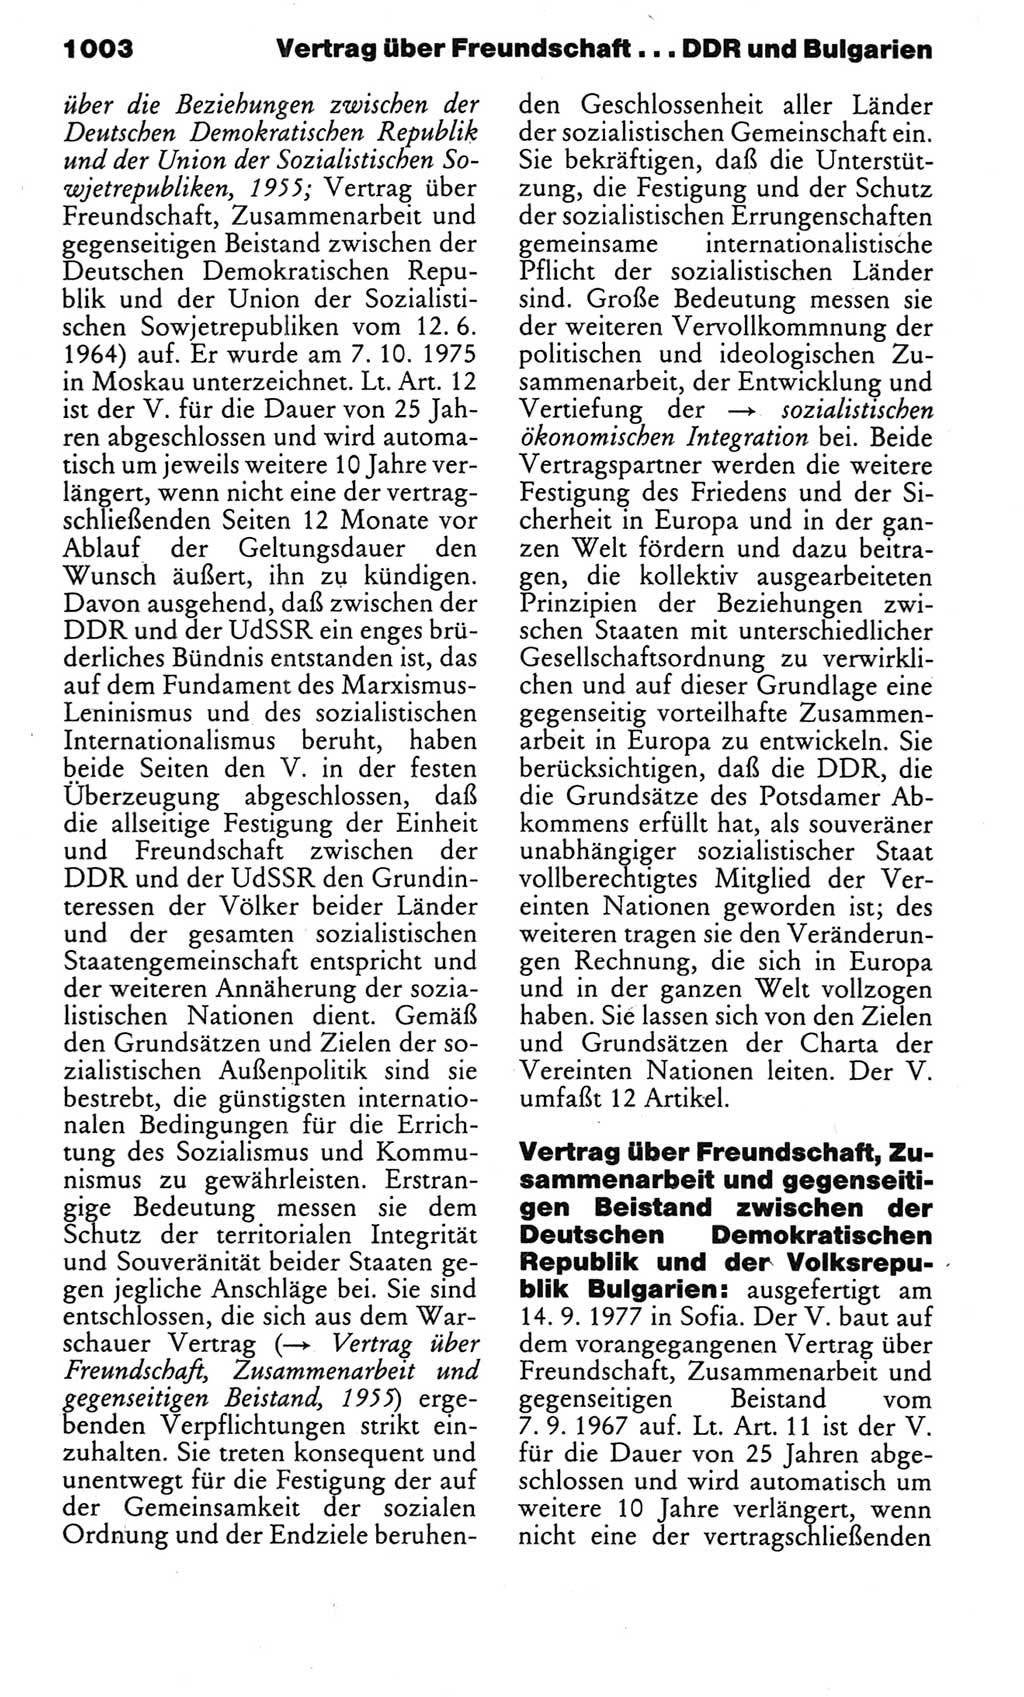 Kleines politisches Wörterbuch [Deutsche Demokratische Republik (DDR)] 1983, Seite 1003 (Kl. pol. Wb. DDR 1983, S. 1003)